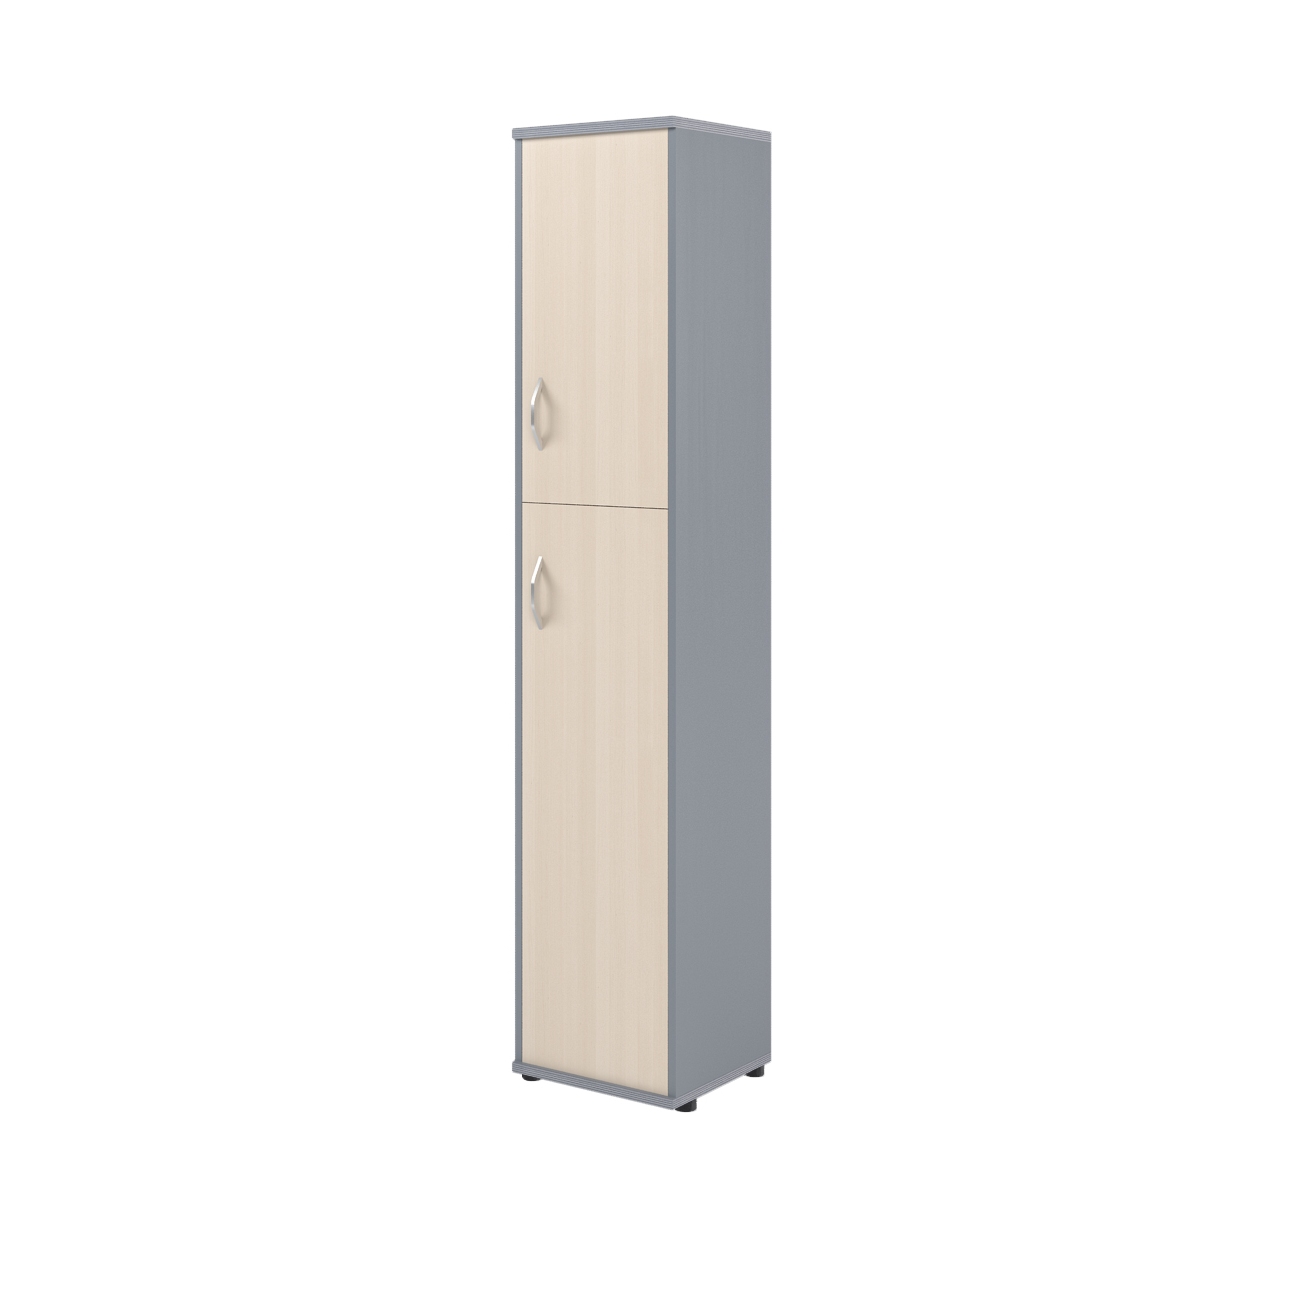 Шкаф колонка с глухой малой и средней дверьми СУ-1.8(R) клен/металлик 406*365*1975 Imago | Защита-Офис - интернет-магазин сейфов, кресел, металлической 